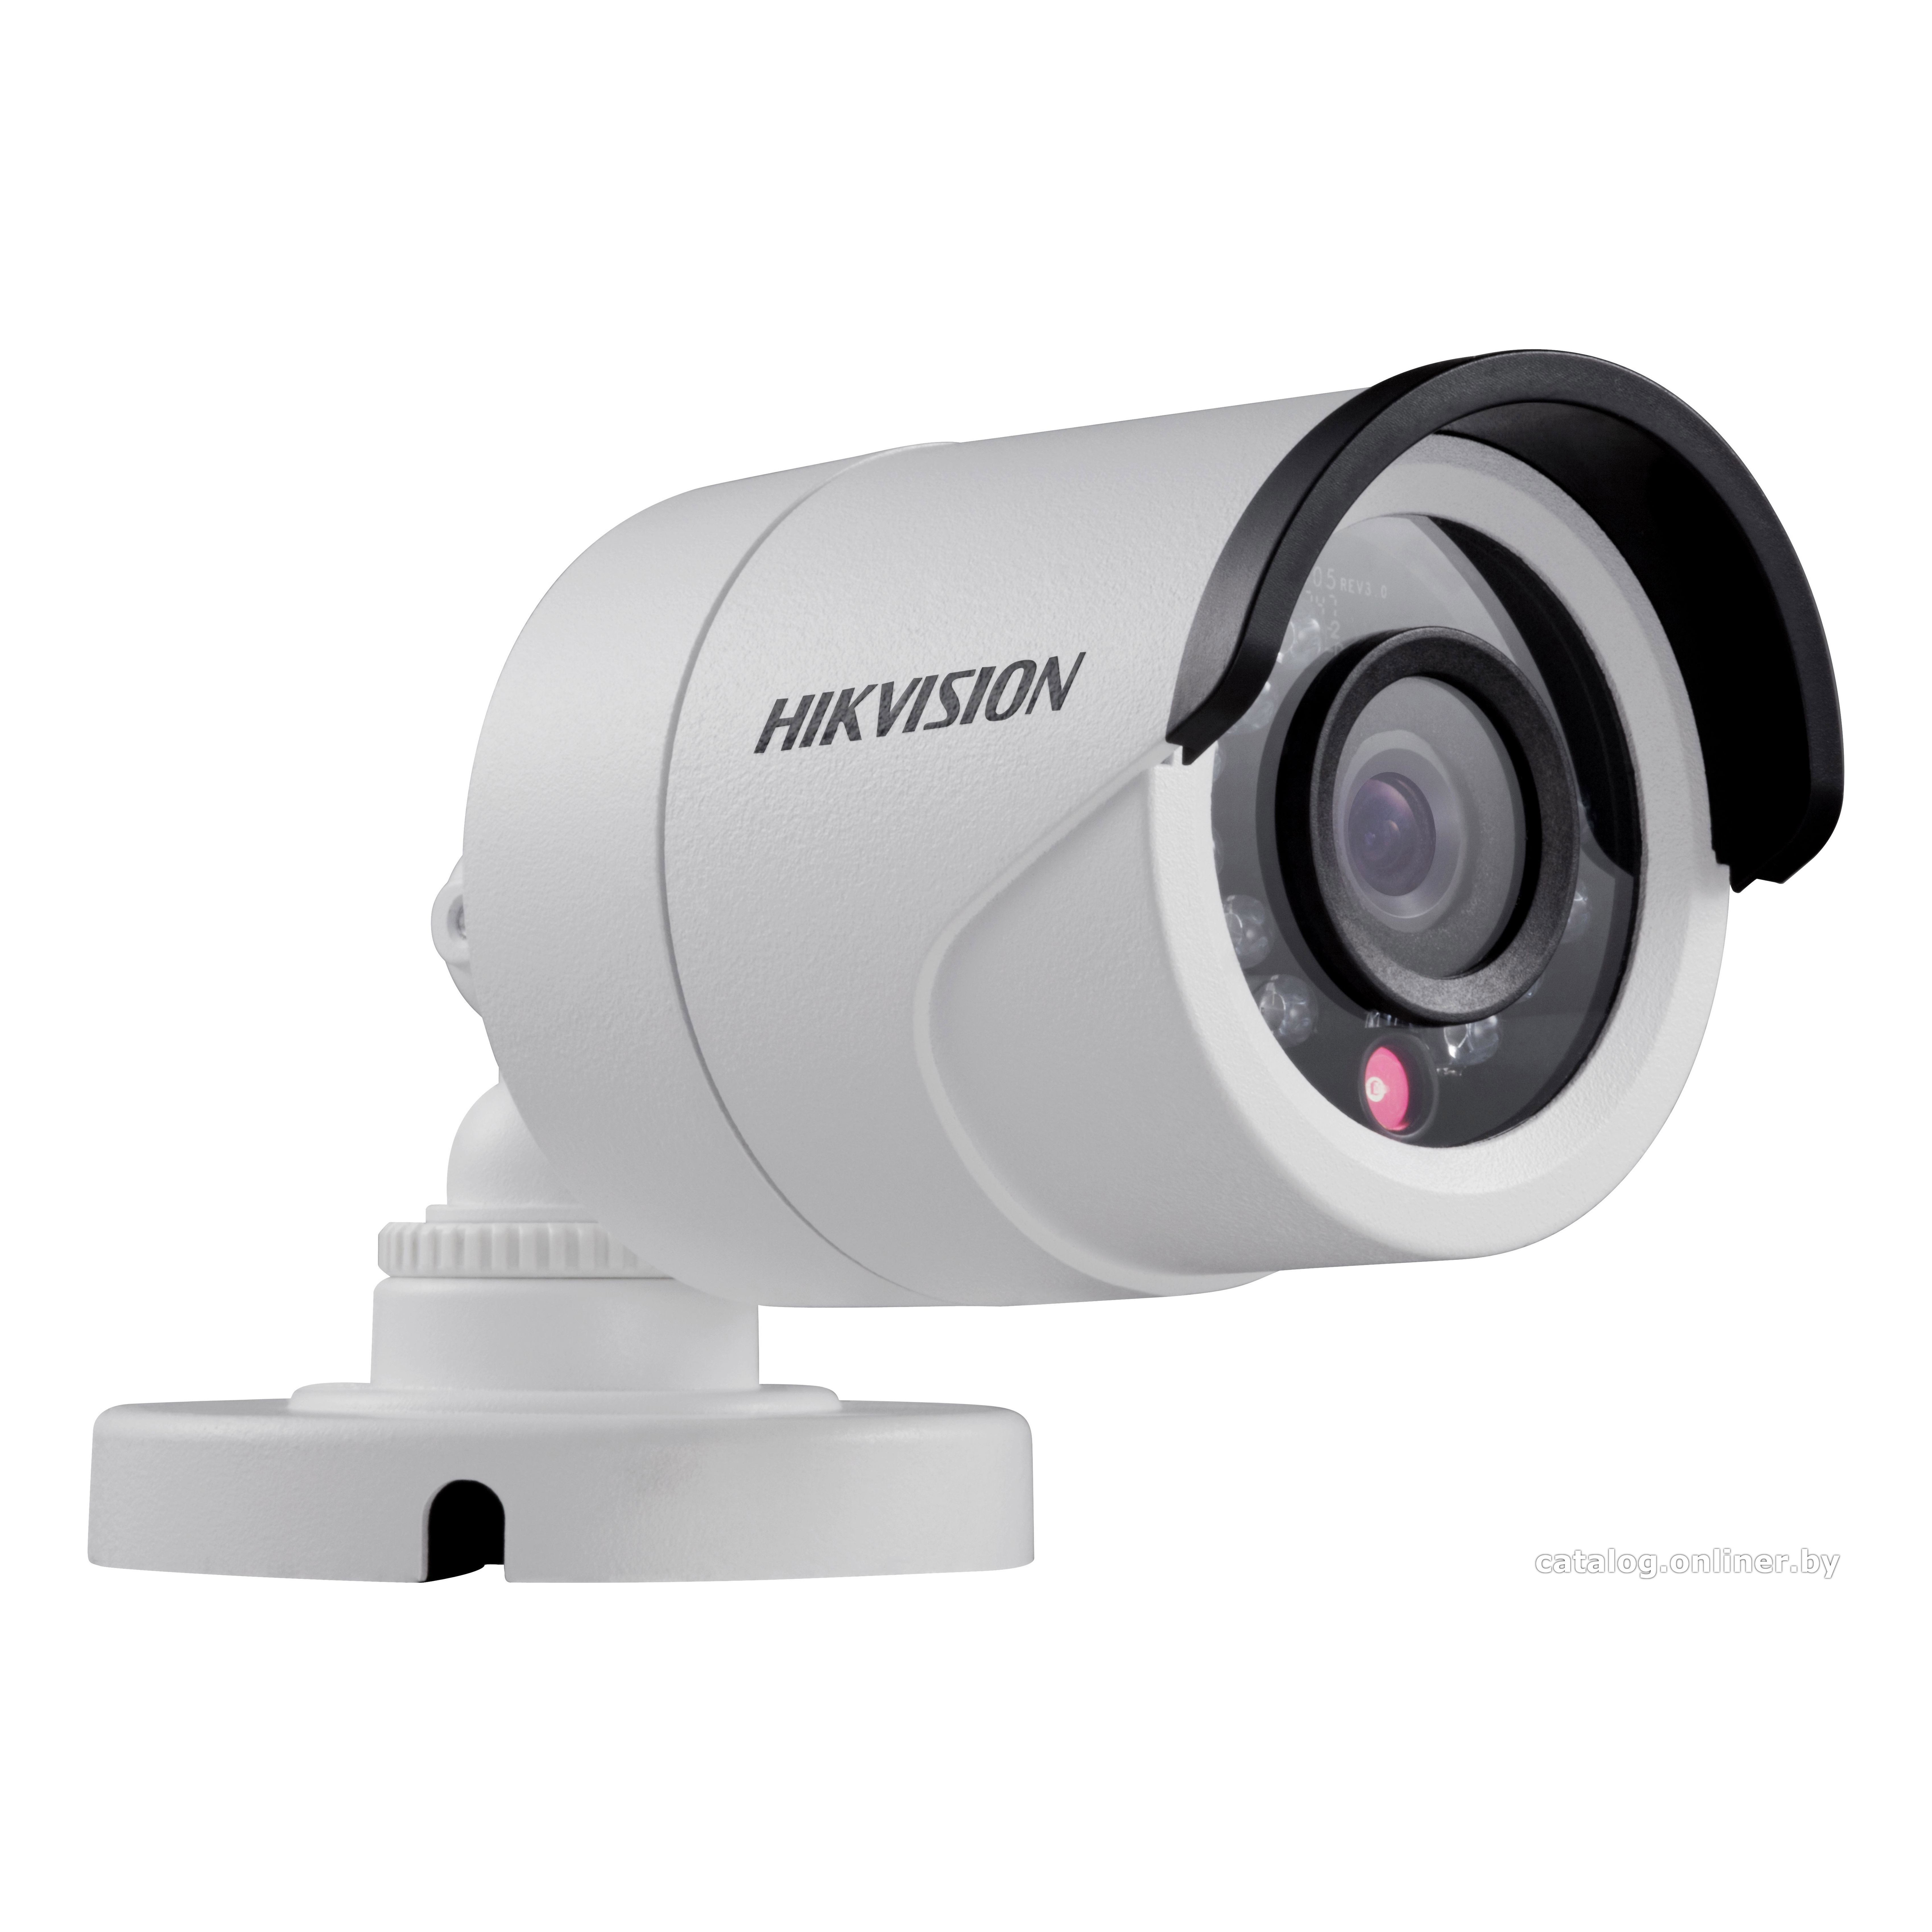 Hikvision DS-2CE16D5T-IR (3.6 mm) HD-TVI видеокамера